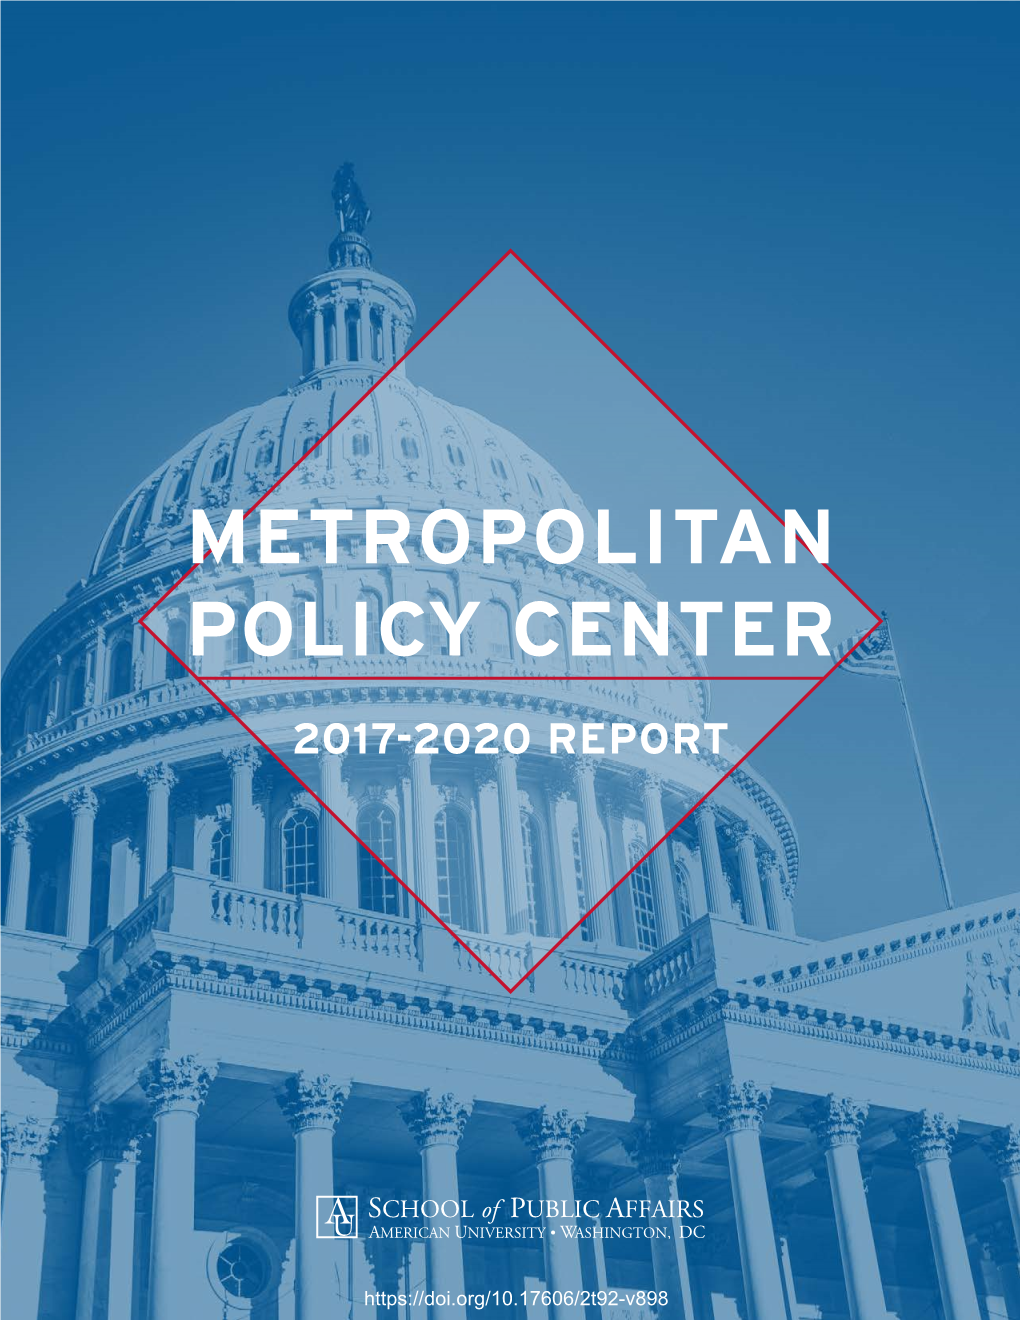 Metropolitan Policy Center